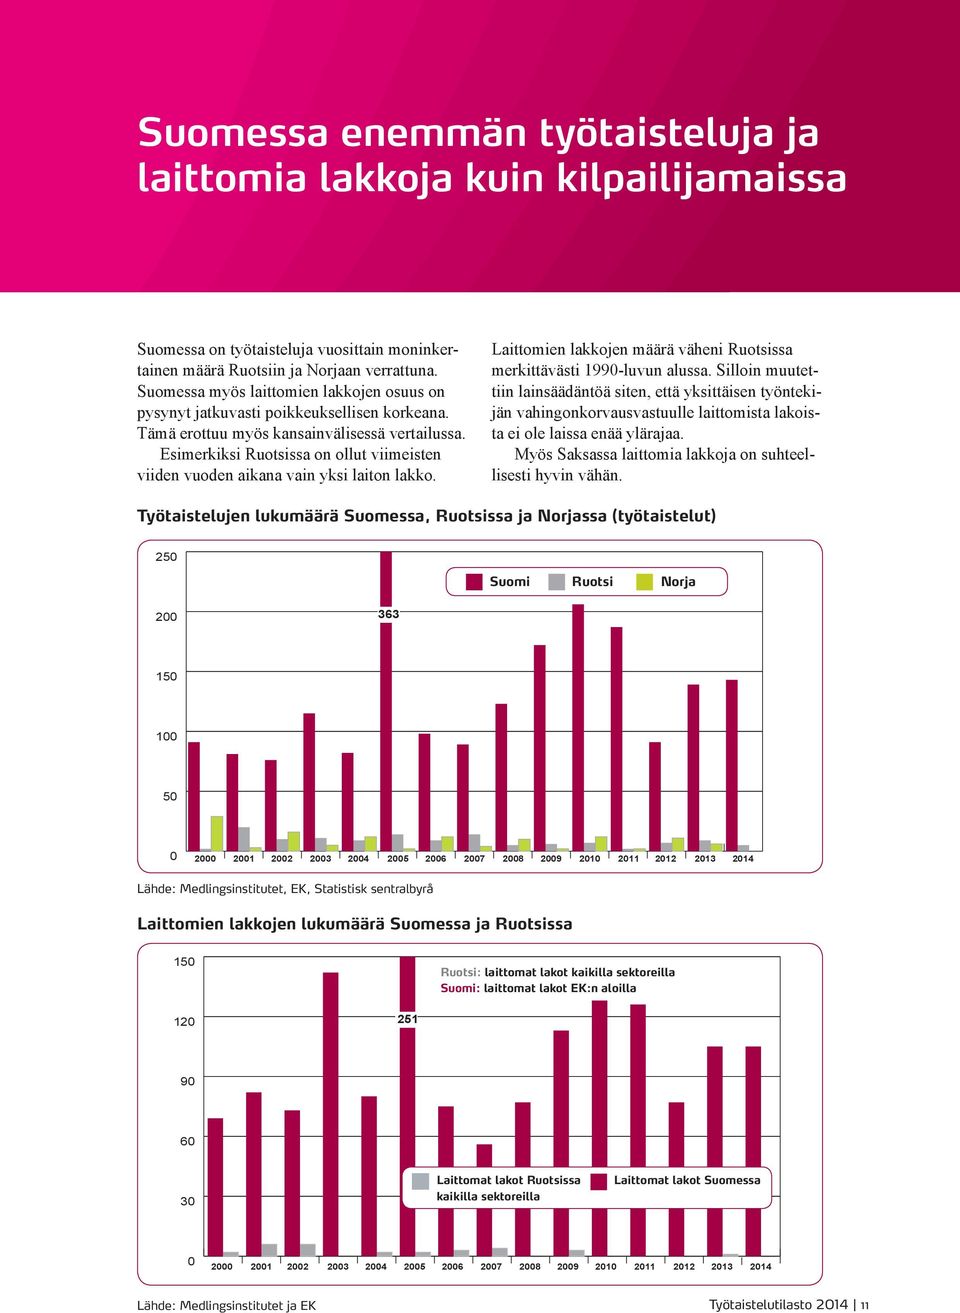 Esimerkiksi Ruotsissa on ollut viimeisten viiden vuoden aikana vain yksi laiton lakko. Laittomien lakkojen määrä väheni Ruotsissa merkittävästi 199-luvun alussa.